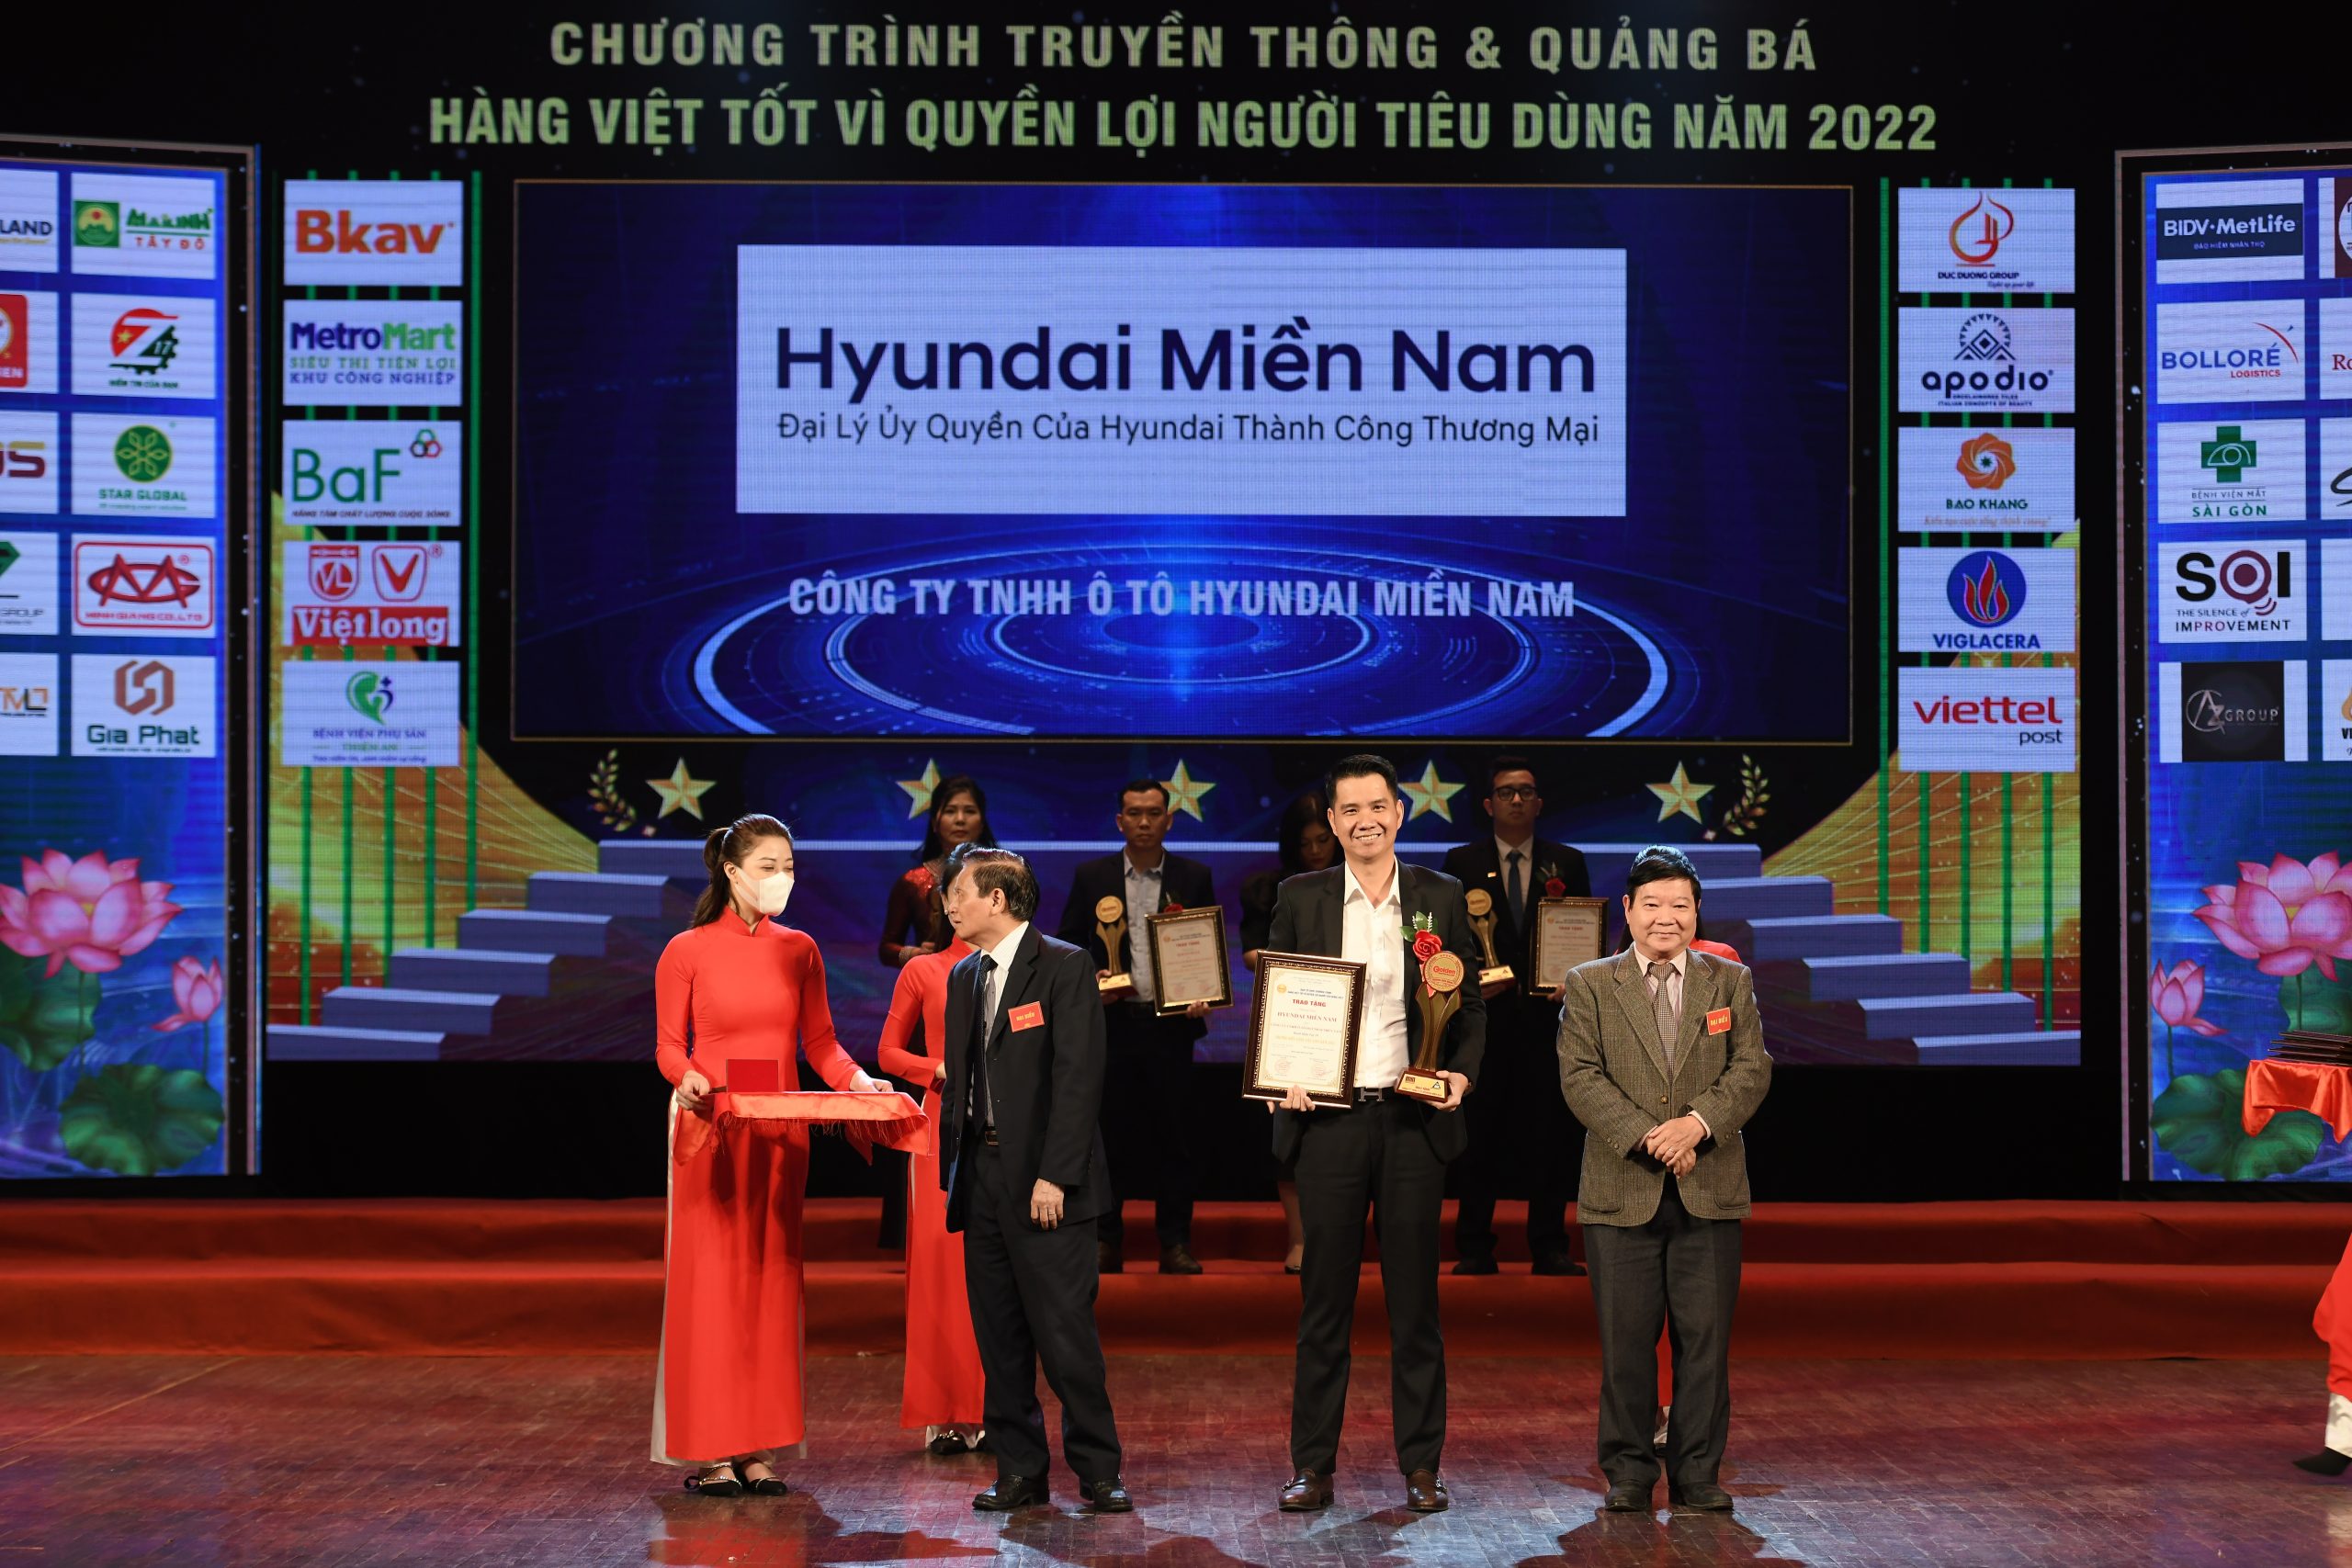 Hyundai Miền Nam đạt danh hiệu "TOP 20 Thương Hiệu Vàng Việt Nam Năm 2022" tại chương trình: "Hàng Việt tốt vì quyền lợi người tiêu dùng năm 2022".